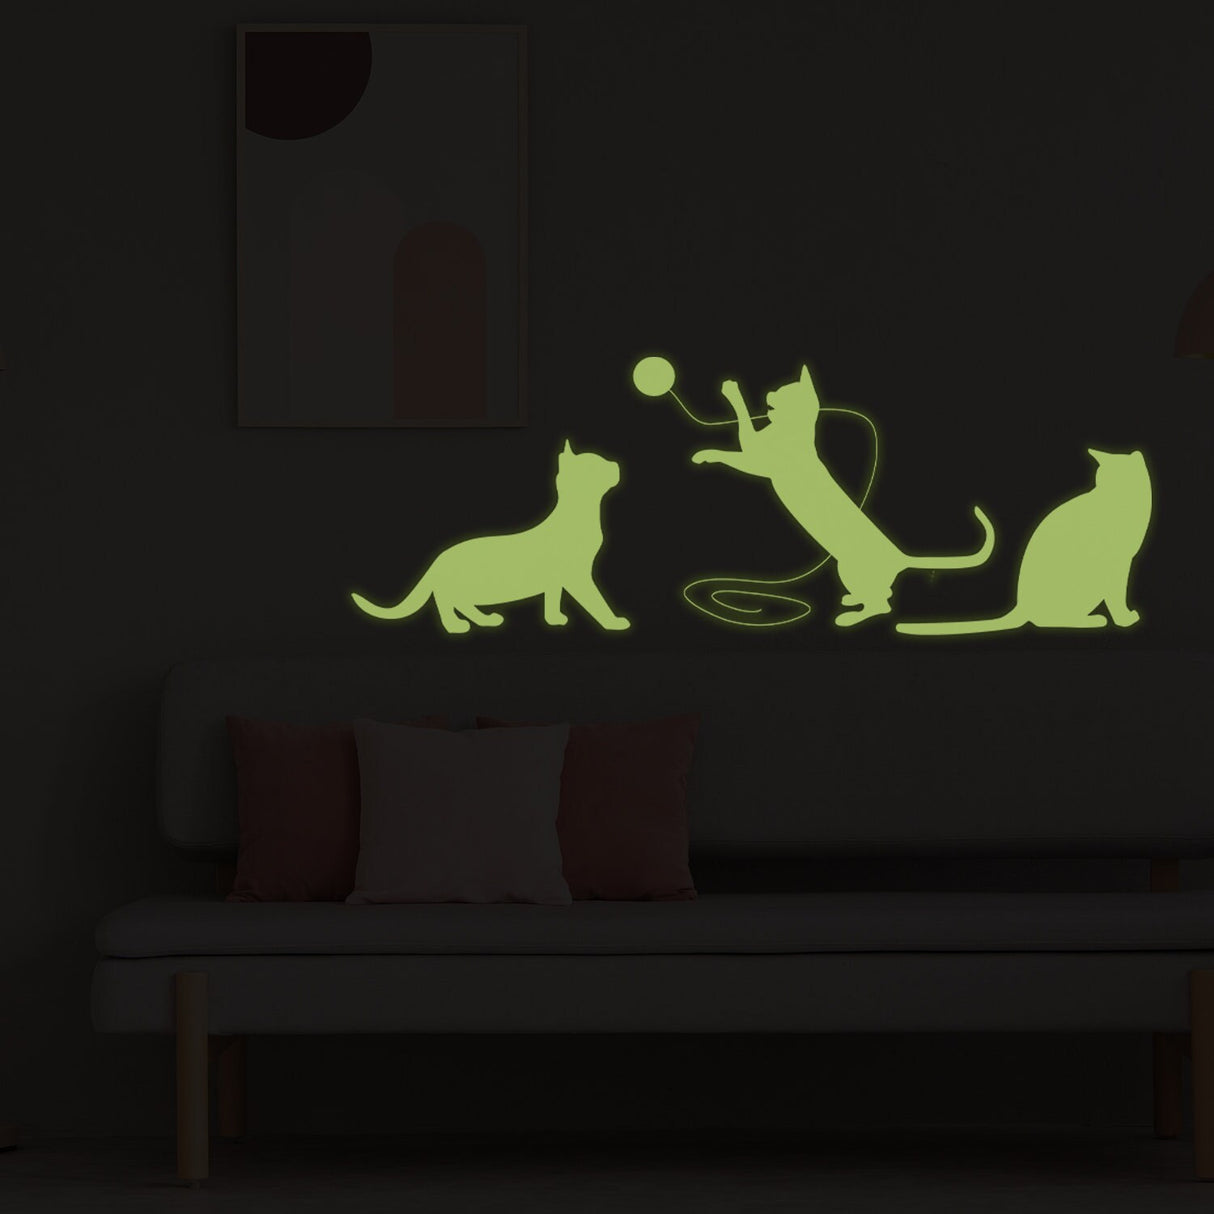 Glow In Dark Big Cat Wall Sticker - Furry Kitten Cute Kitty Vinyl Pet Silhouette Decal